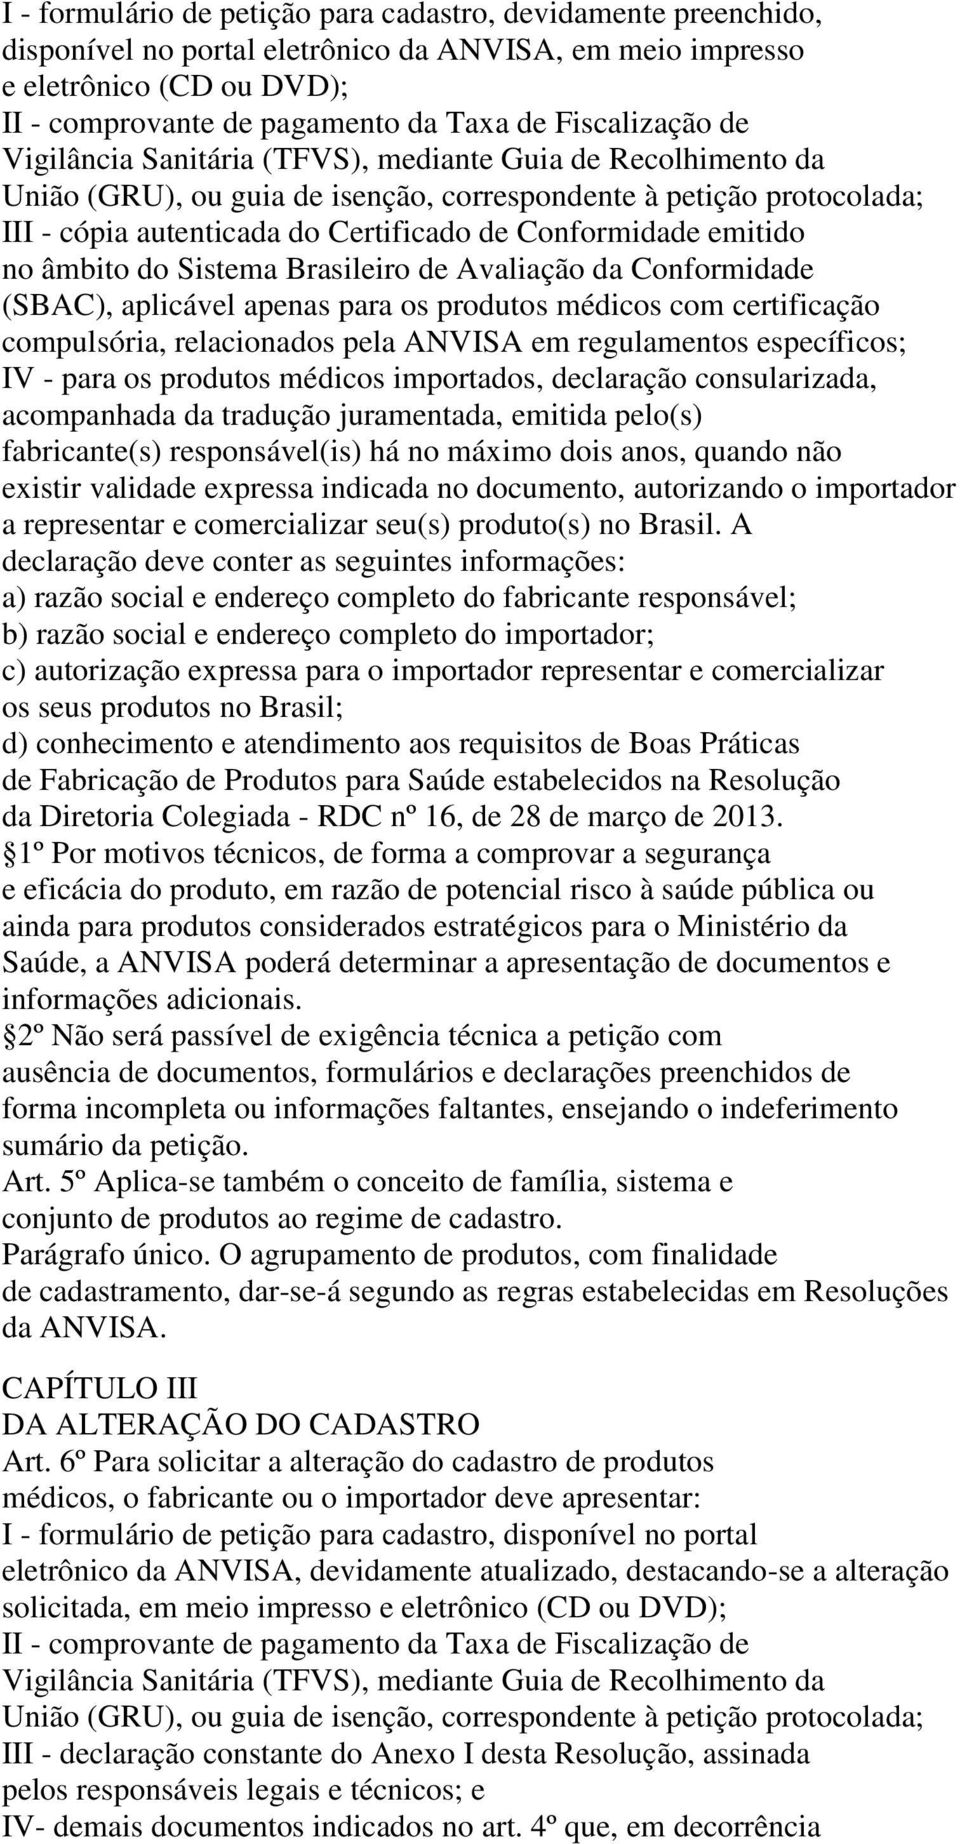 Conformidade emitido no âmbito do Sistema Brasileiro de Avaliação da Conformidade (SBAC), aplicável apenas para os produtos médicos com certificação compulsória, relacionados pela ANVISA em